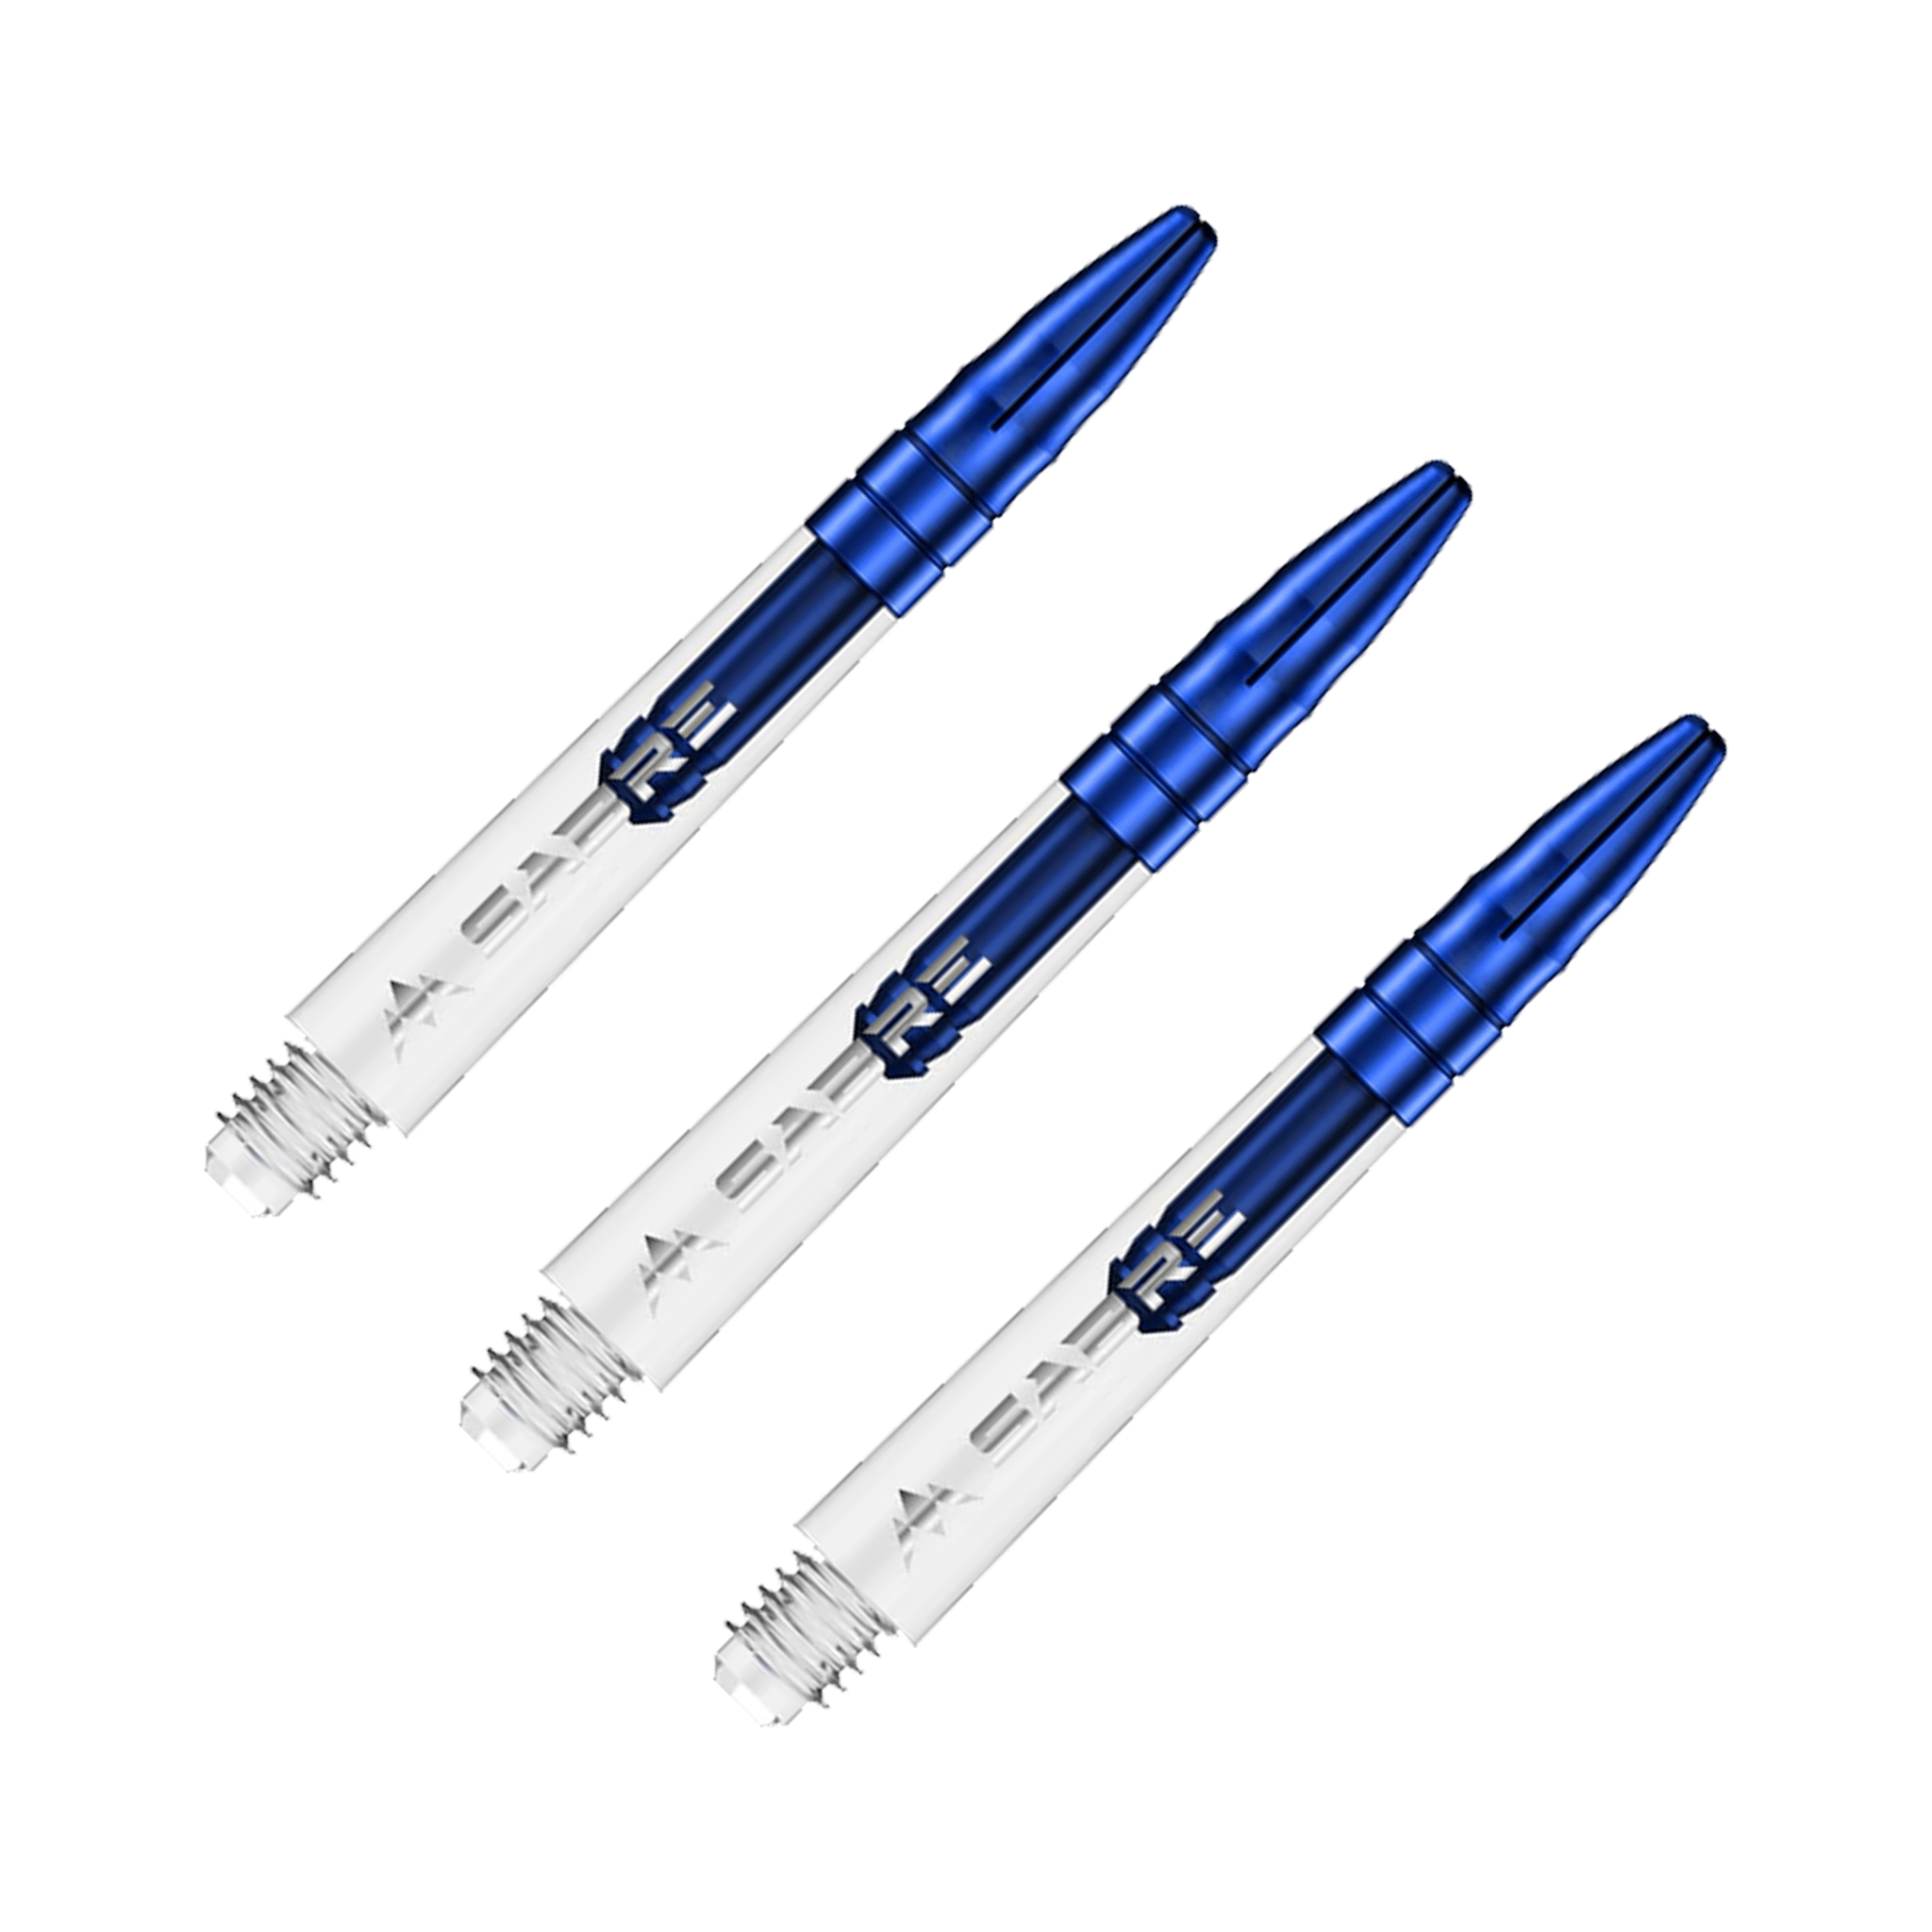 Mission Sabre - Polycarbonate Dart Shafts Midi (40mm) / Clear & Blue Shafts